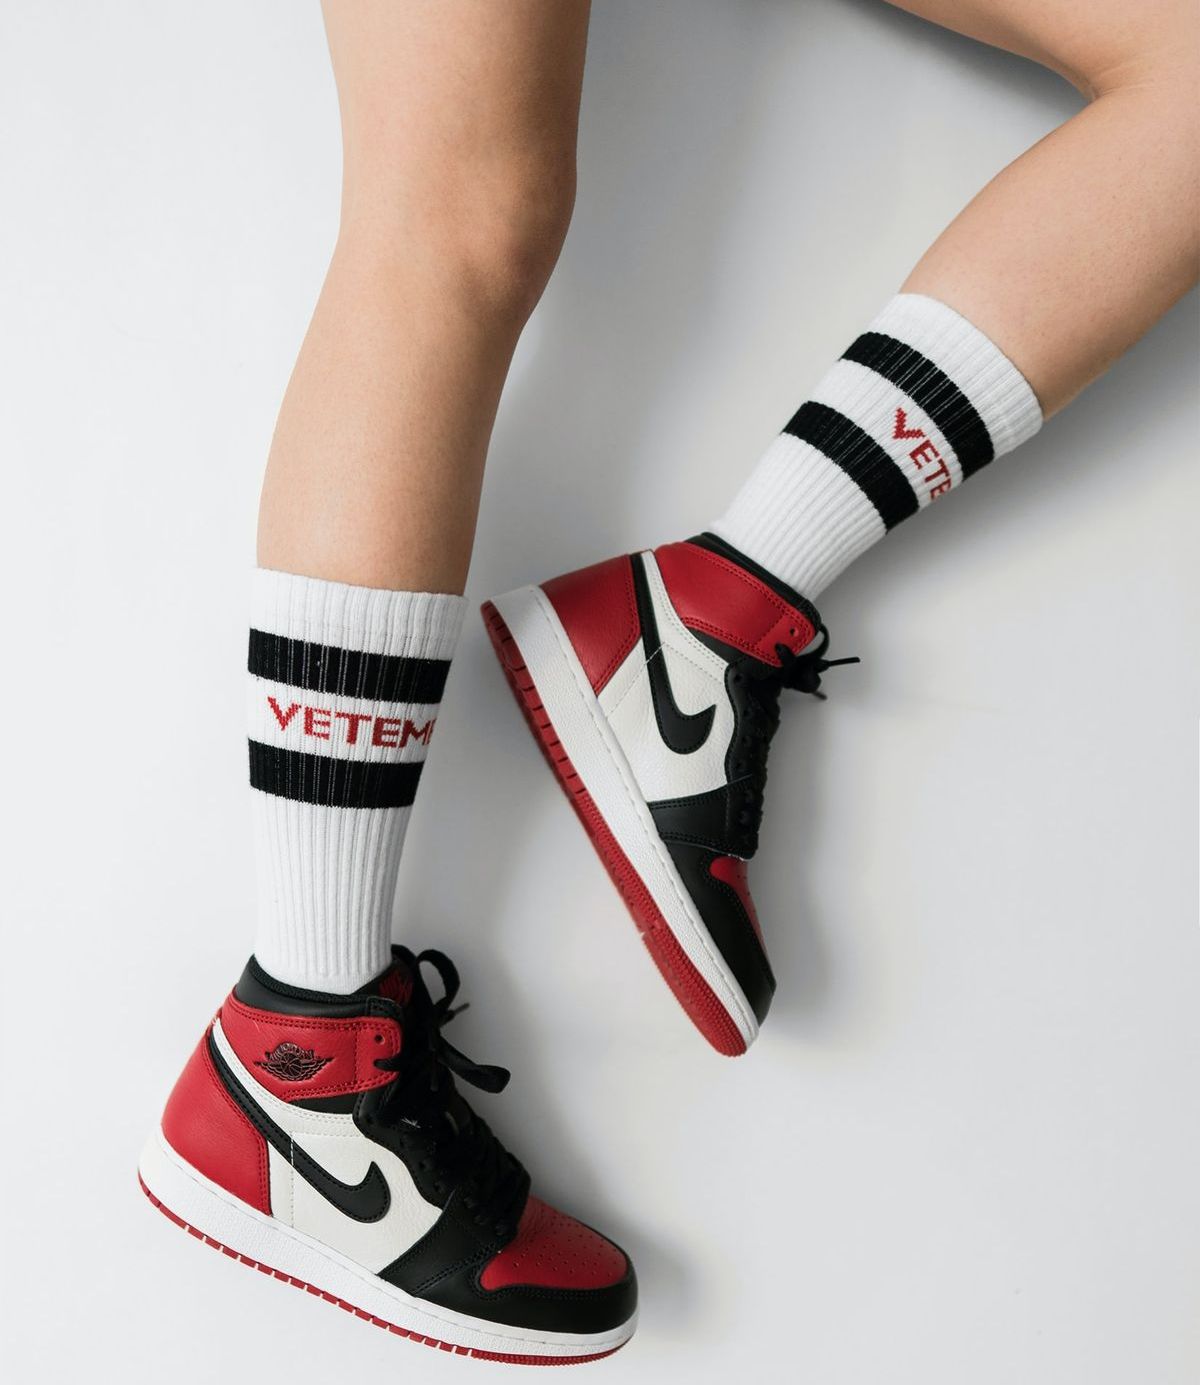 Sportmarken-Websites: Nike bei Besucherinteresse weit vorn